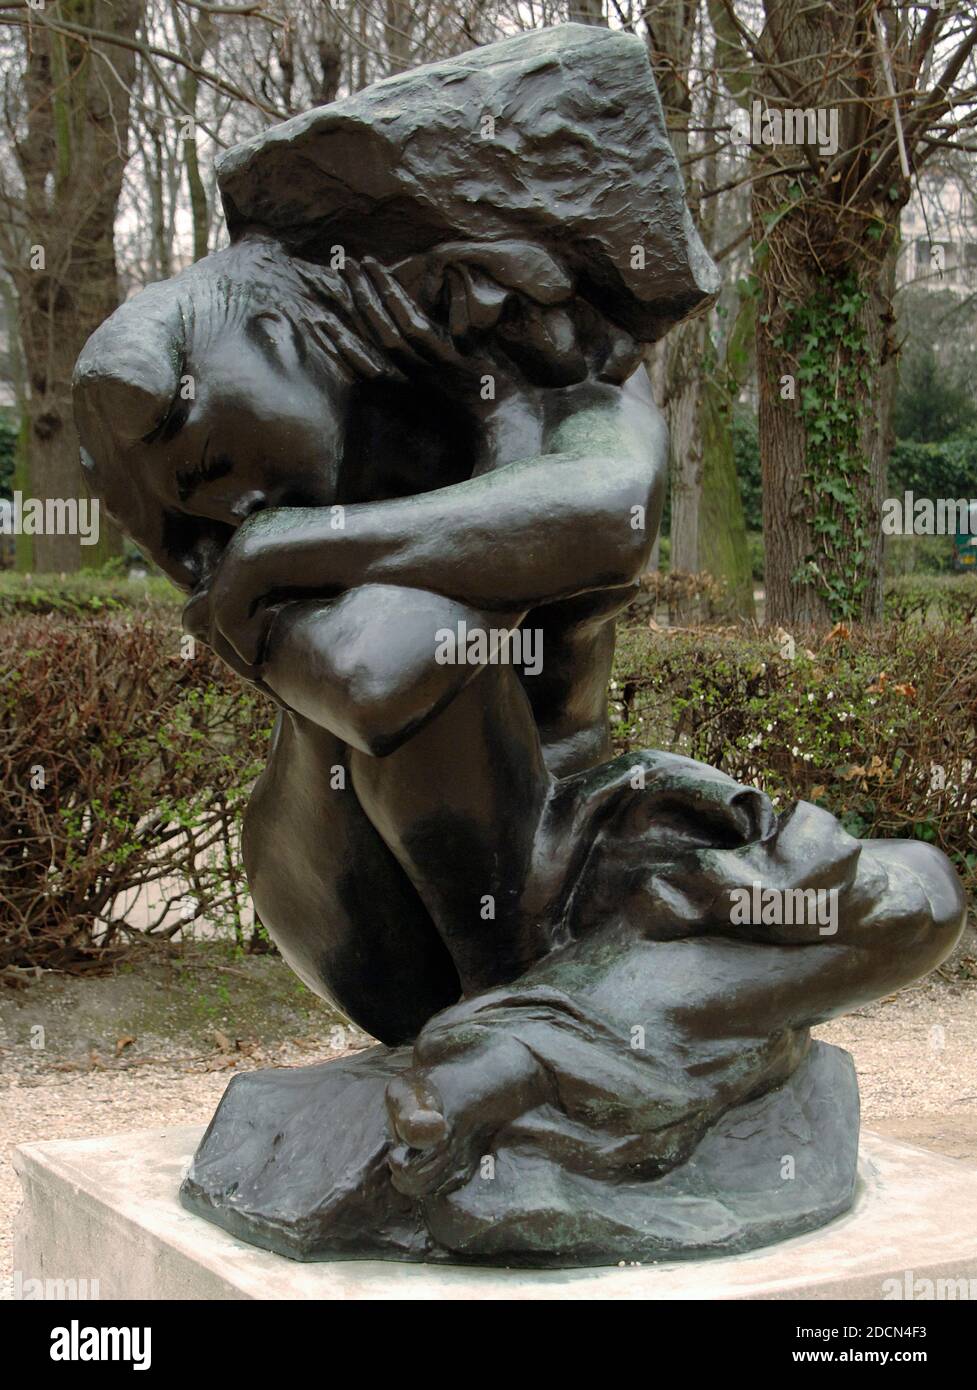 Auguste Rodin (1840-1917). Sculpteur français. Caryatide tombée portant sa pierre. Bronze. Jardin de sculptures. Musée Rodin. Paris. France. Banque D'Images